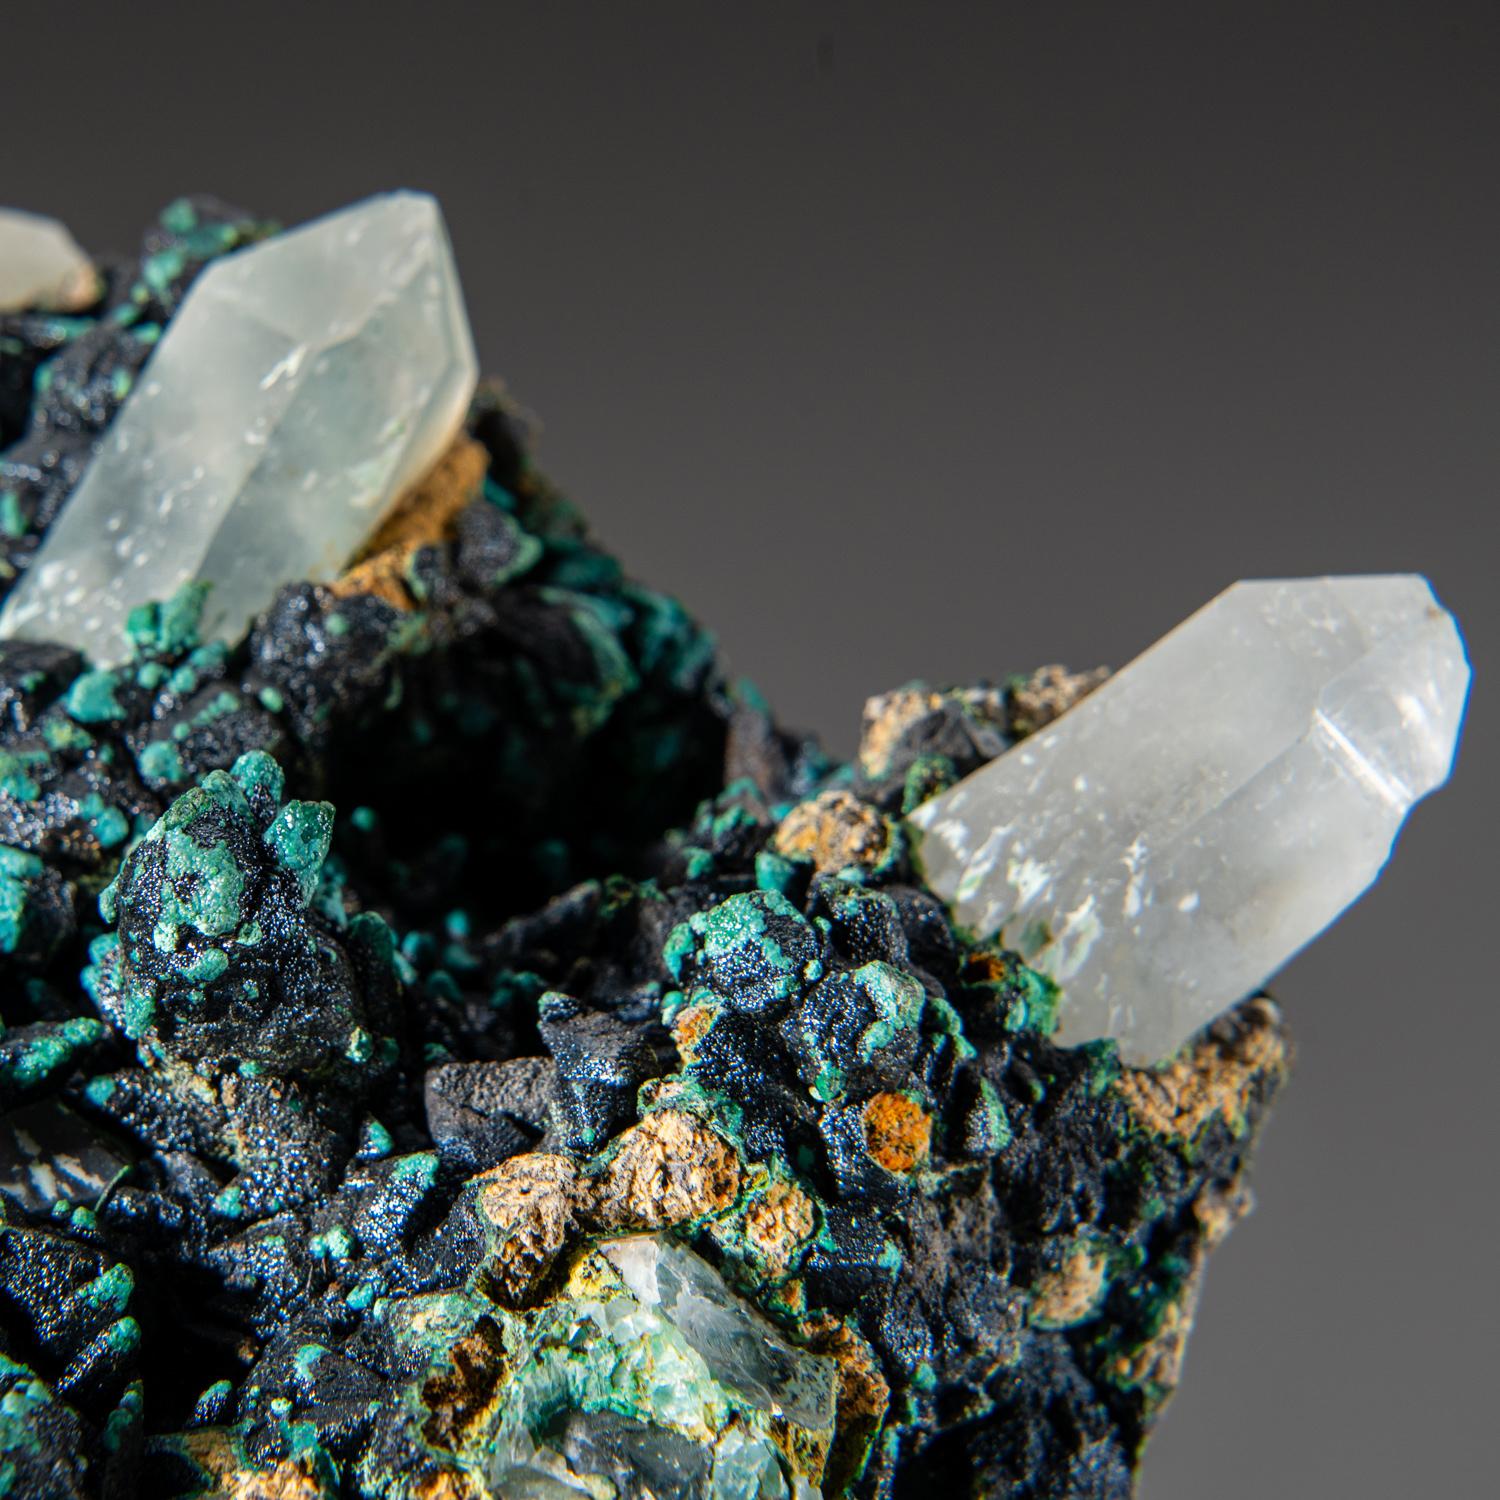 De la mine Ray, district de Mineral Creek, comté de Pinal, Arizona

Couche de micro cristaux de chrysocolle bleu vif sur une matrice en cristal de quartz de Coates. Le contraste de la chrysocolle avec la matrice est très attrayant.

Poids : 8.1 lbs,